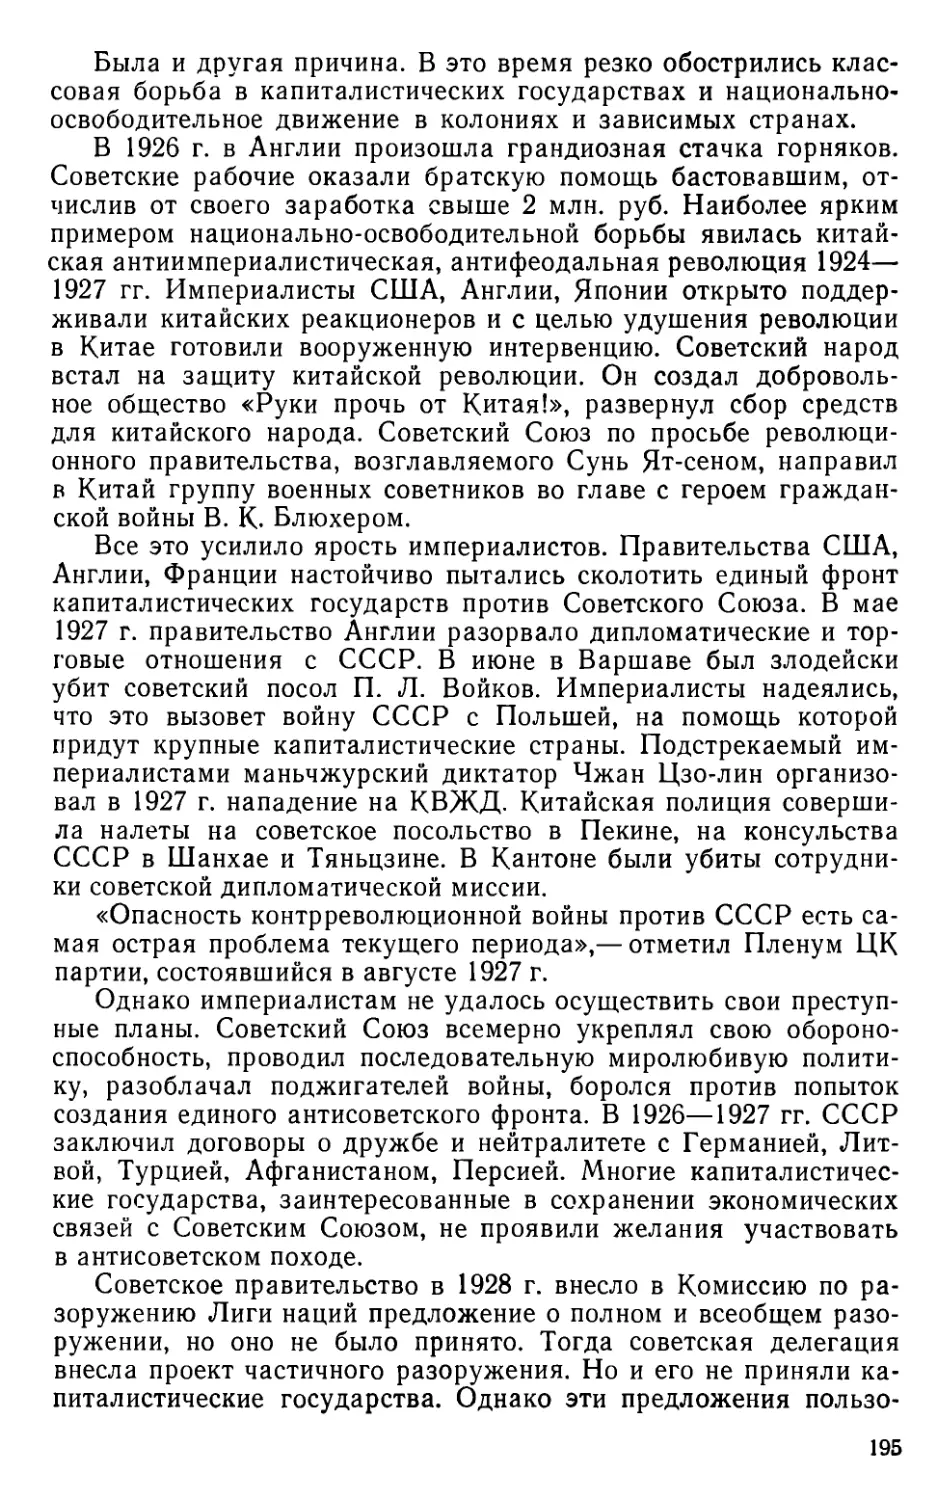 § 34. Международное положение и внешняя политика СССР в 1926—1932 гг.